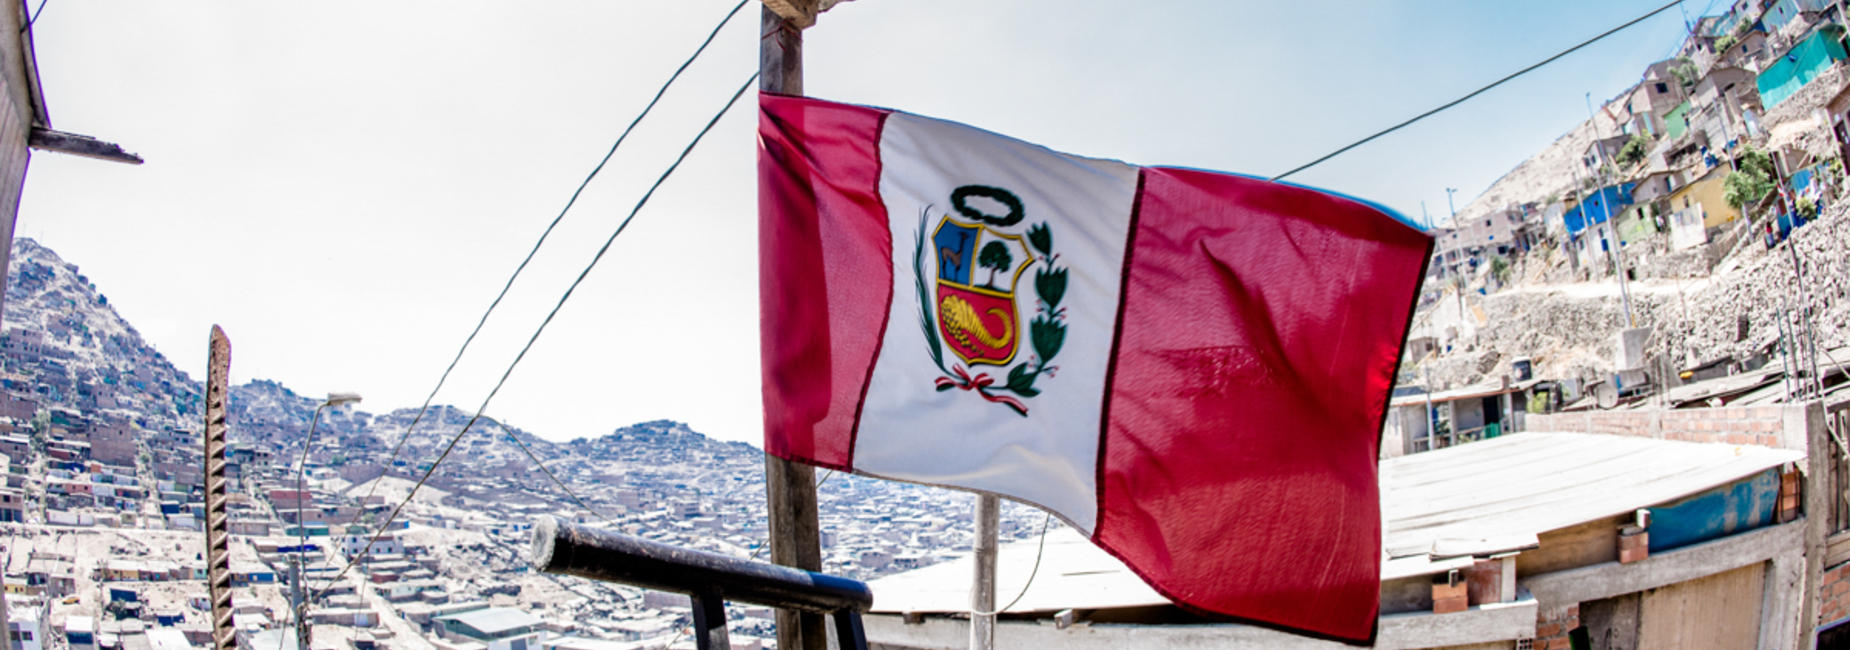 Mache ein Auslandspraktikum in Peru